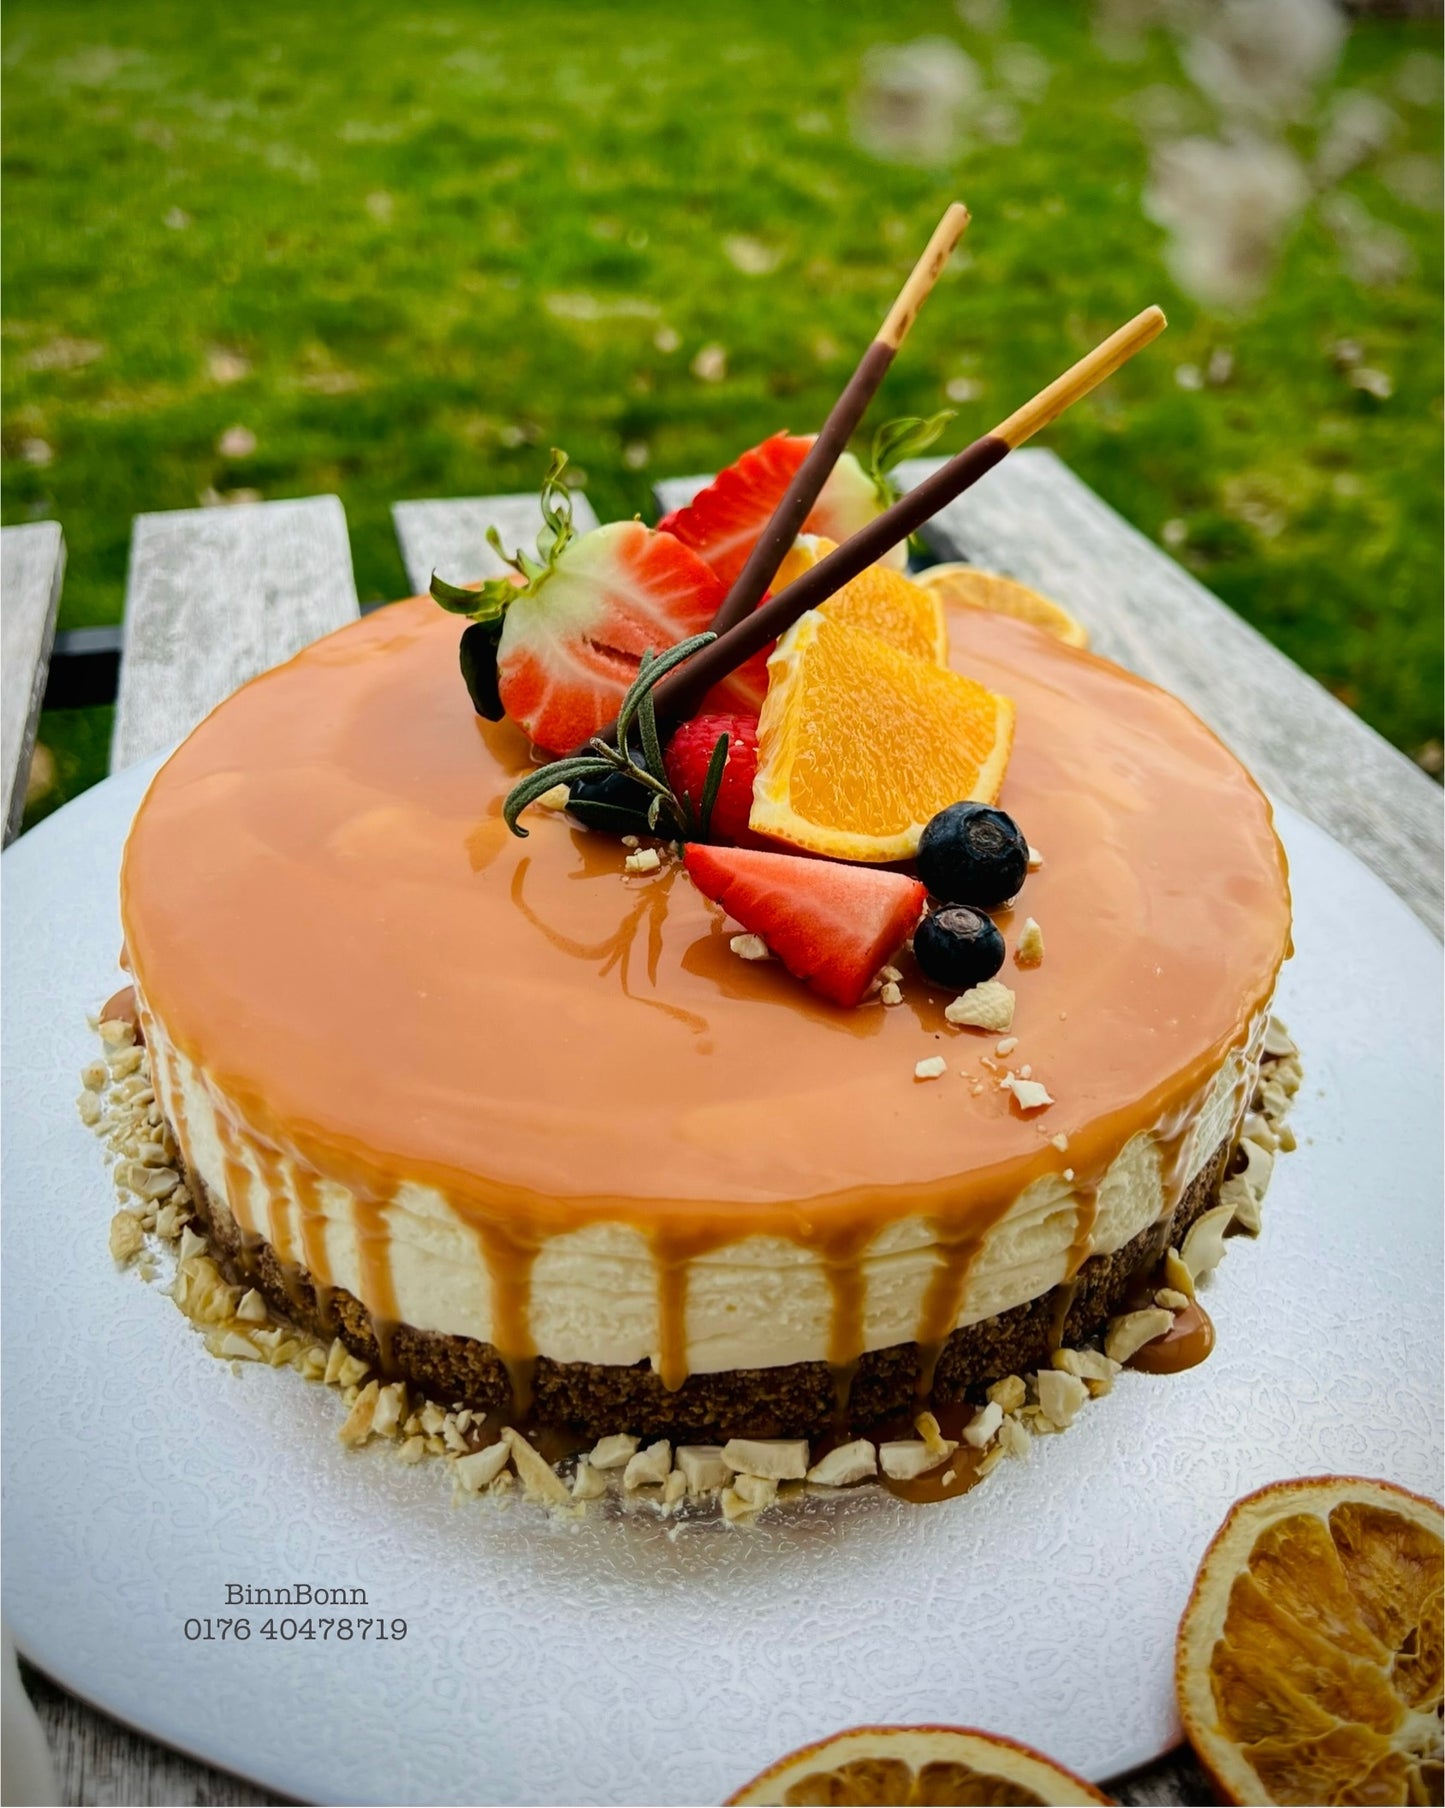 37. Torte "Poetry salted Caramel" mit Cashew und frischen Beeren und Orangen 26 cm